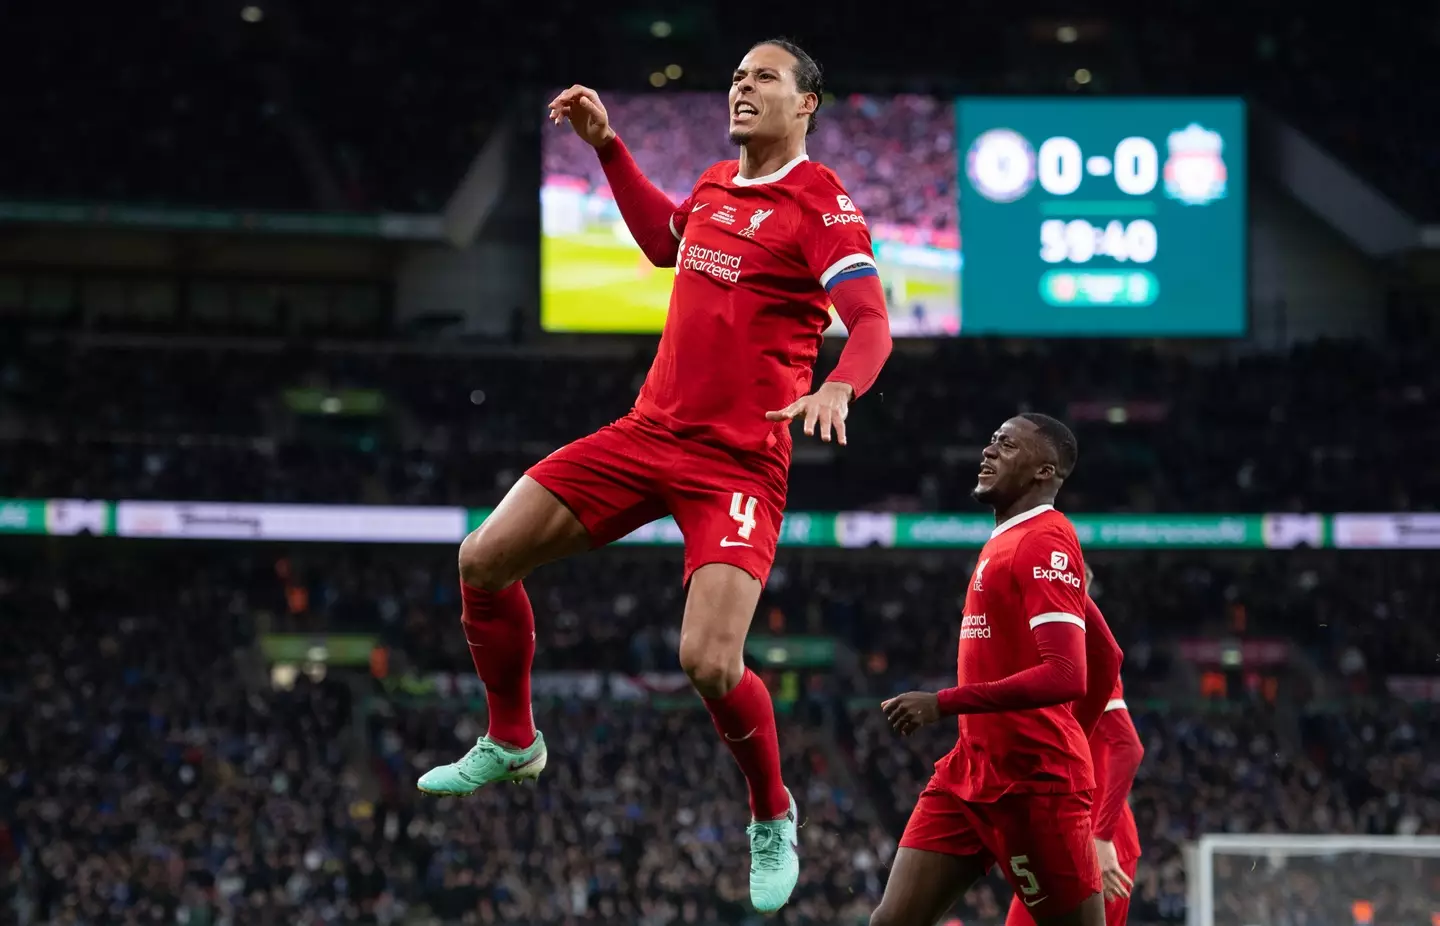 Virgil van Dijk celebrates scoring Liverpool's goal in the Carabao Cup final. Image: Getty